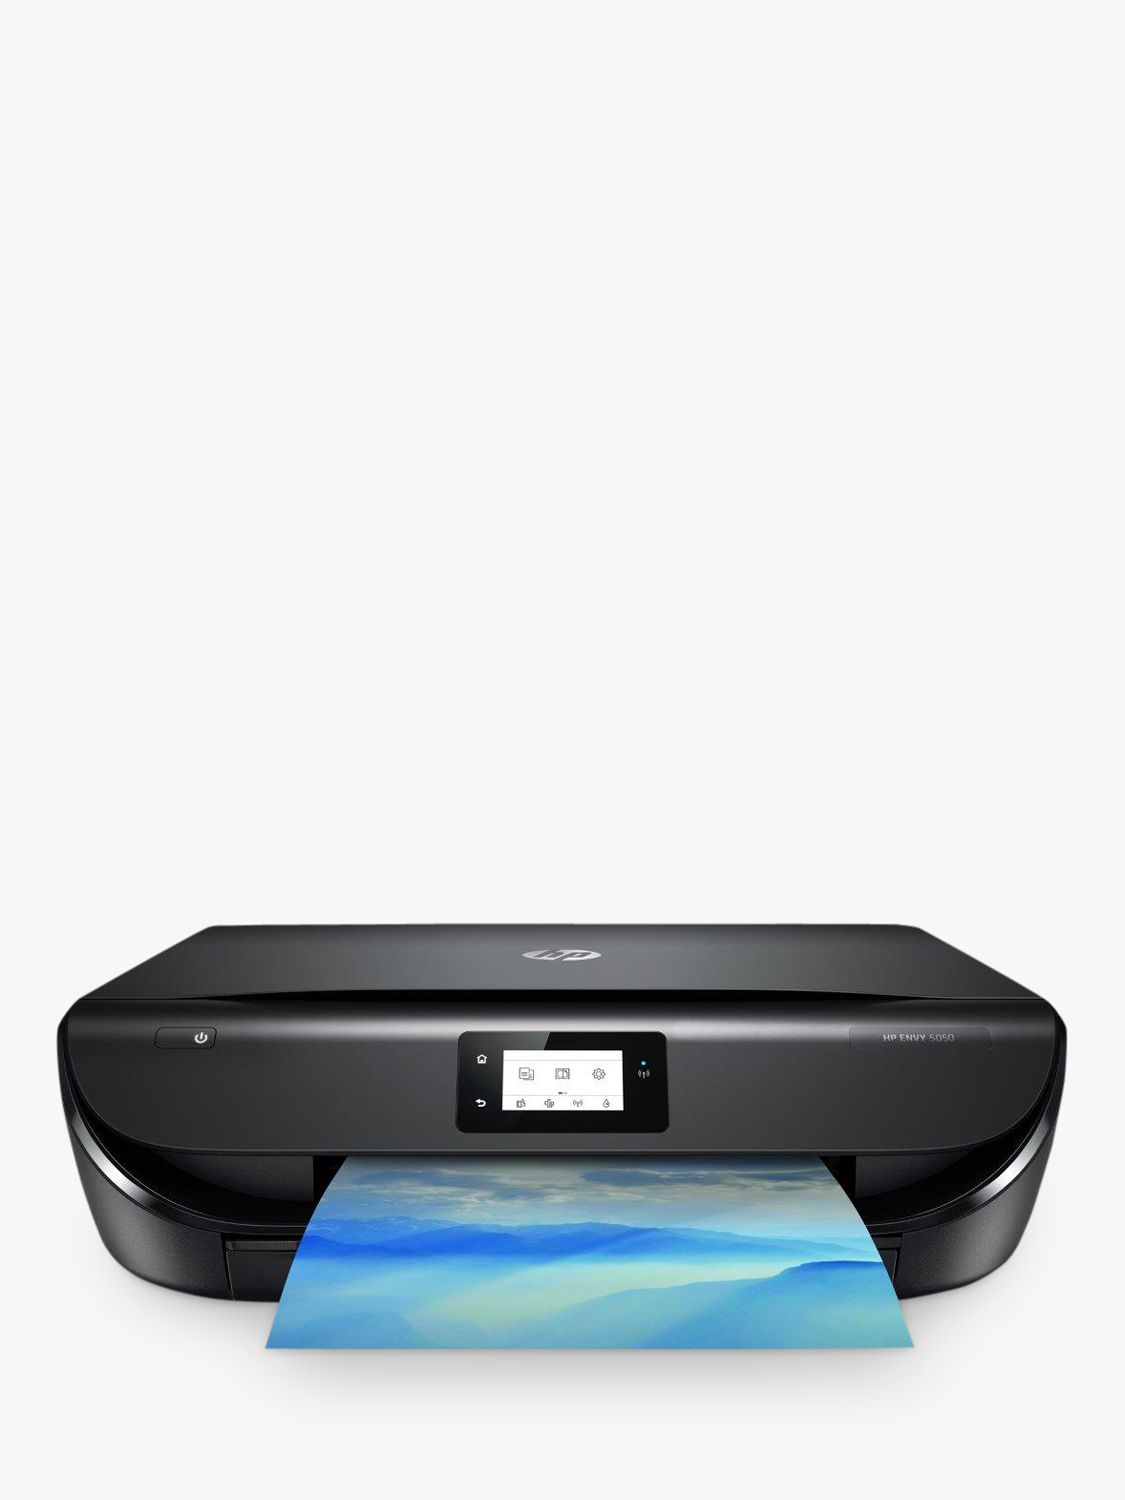 wireless printer scanner copier